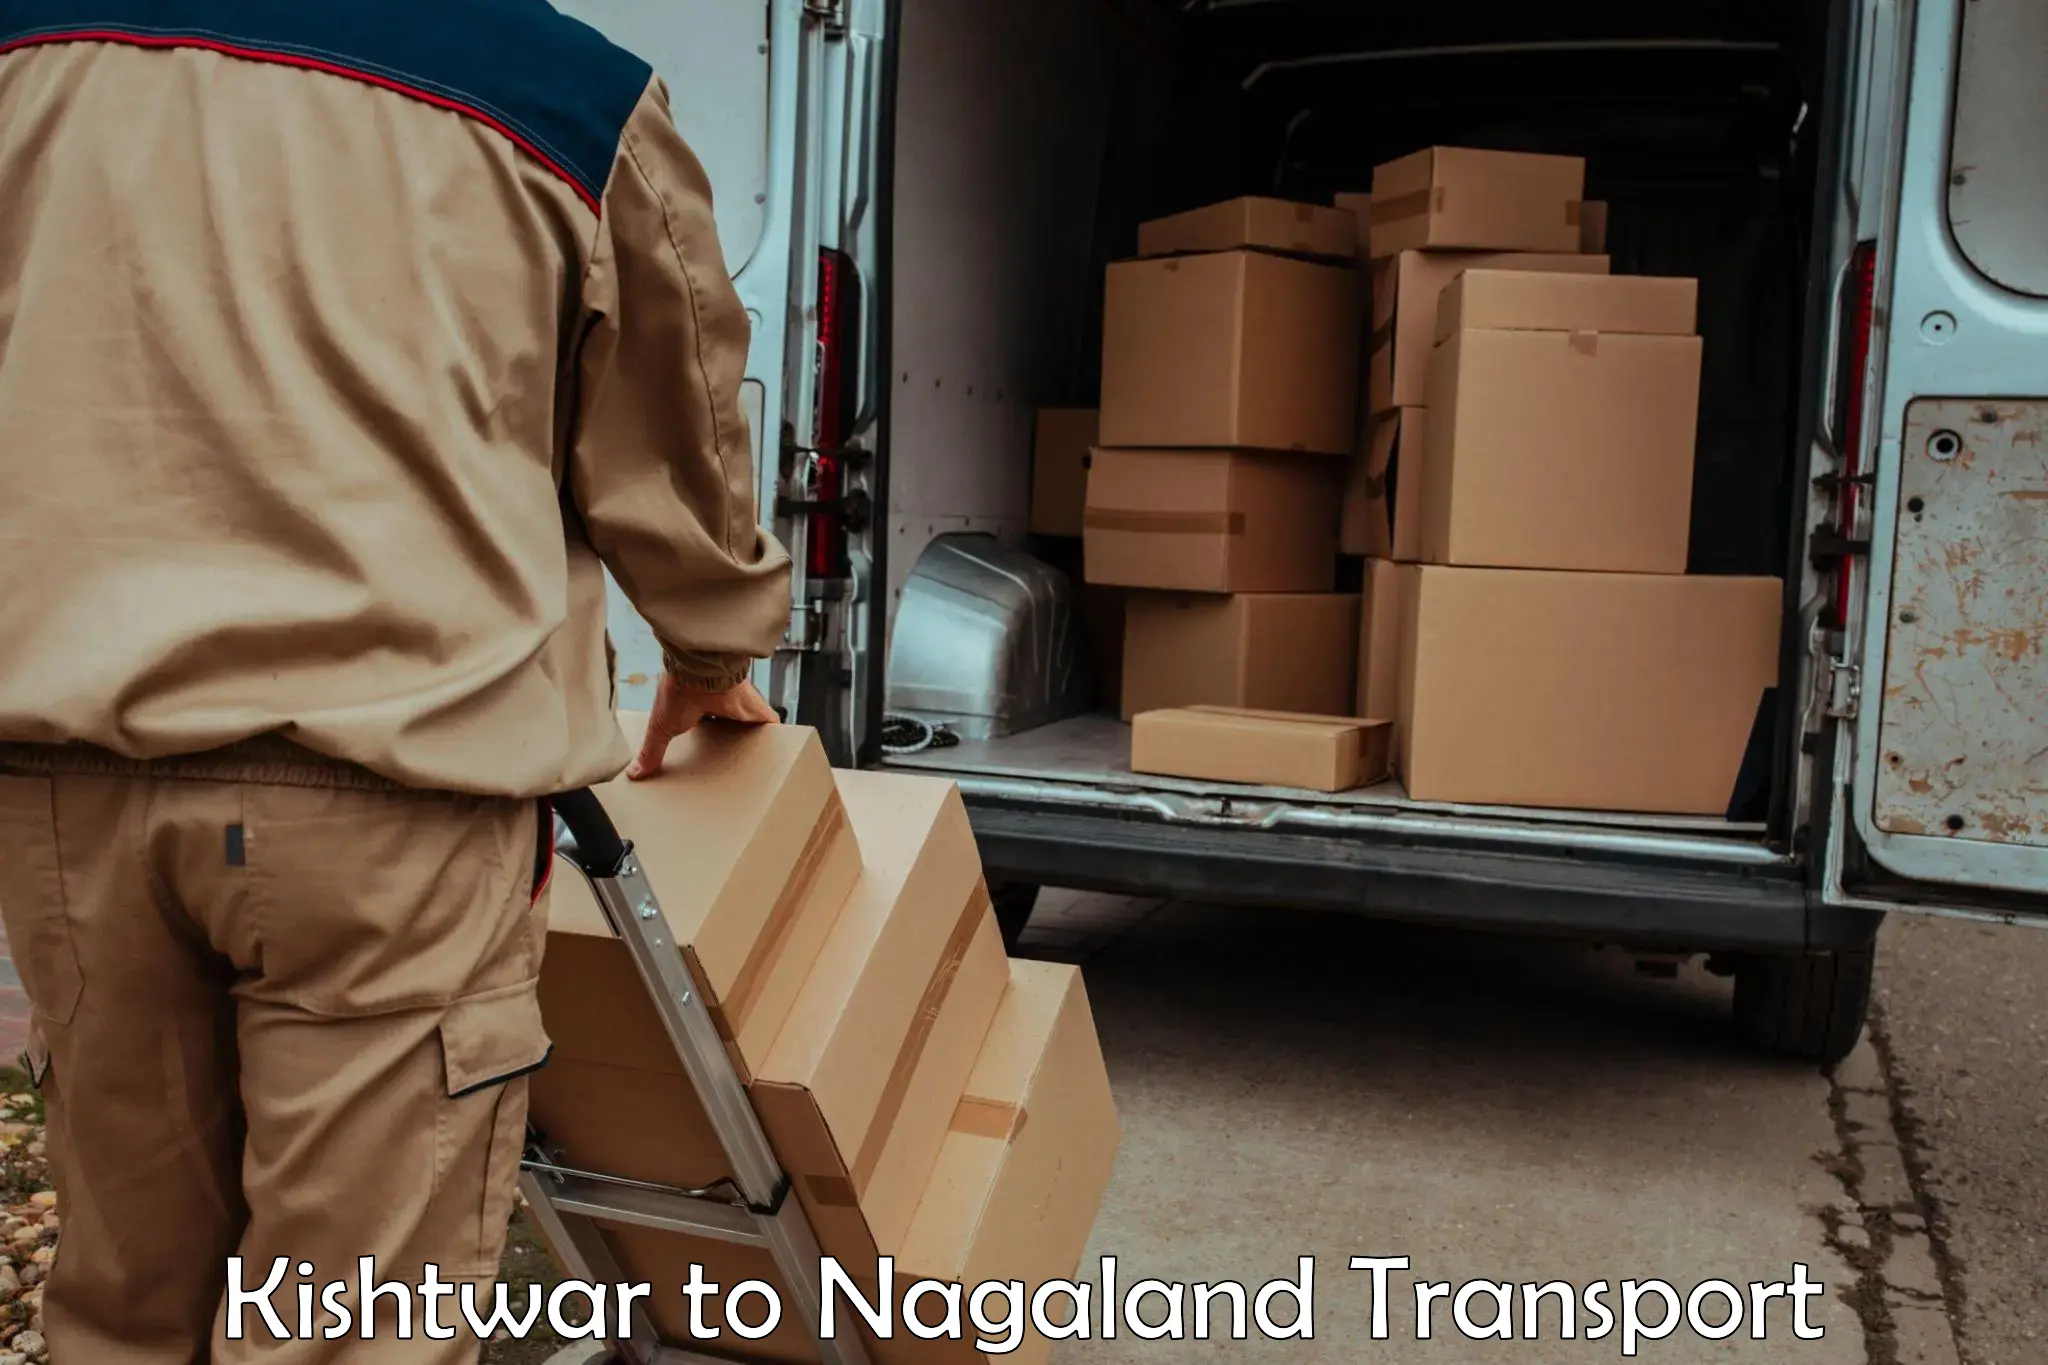 Bike shipping service Kishtwar to NIT Nagaland